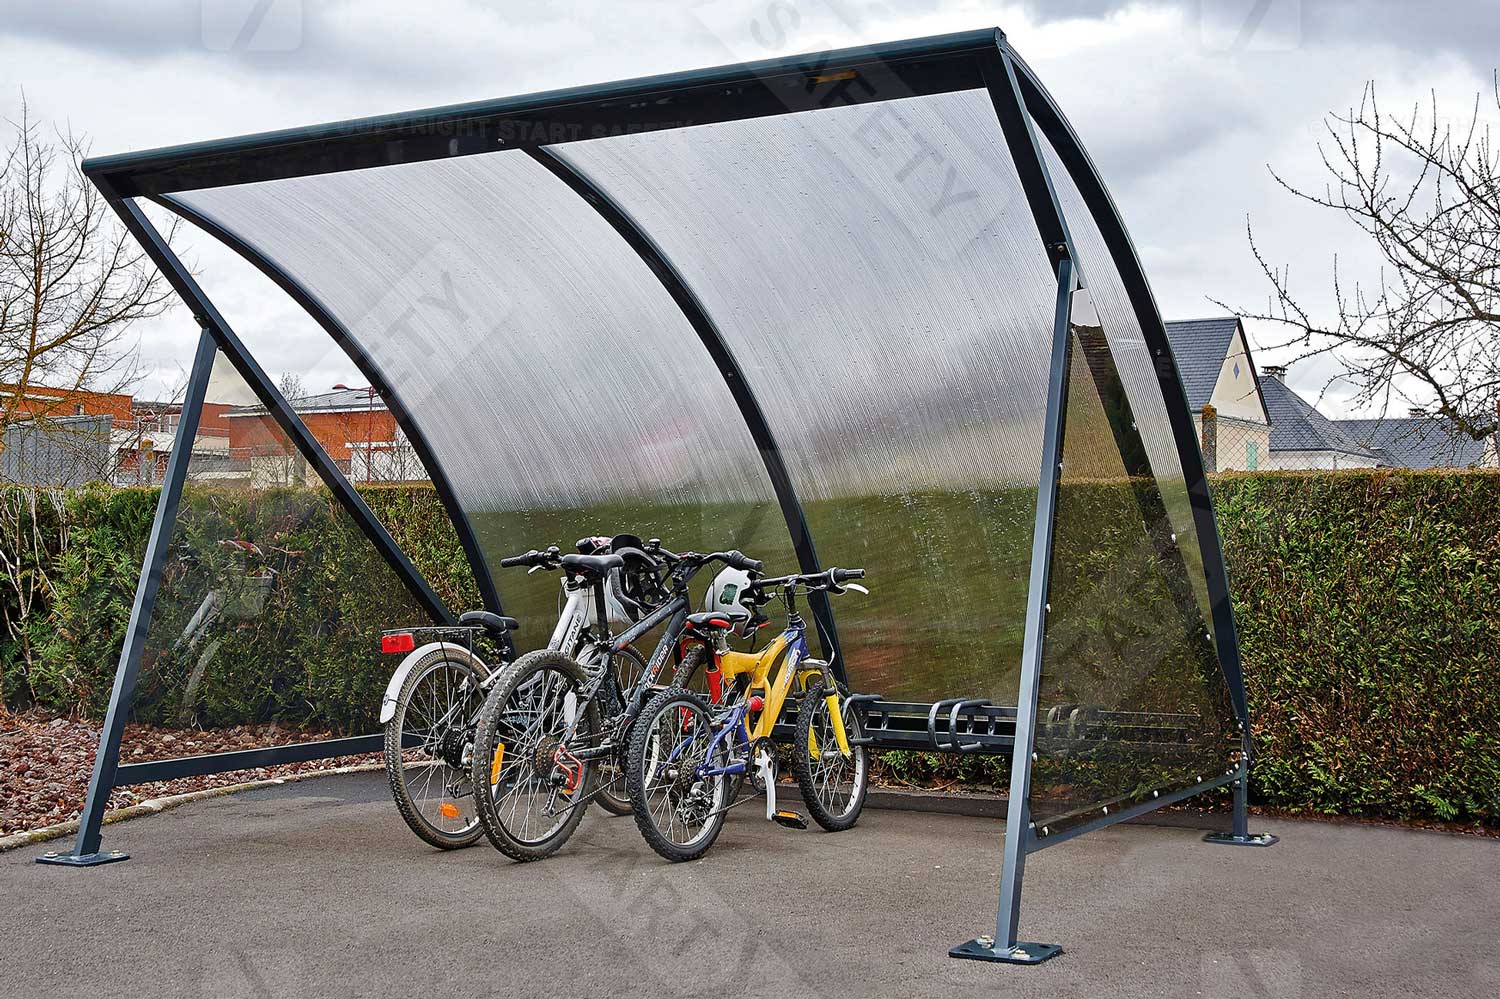 Moonshape bike shelter installed